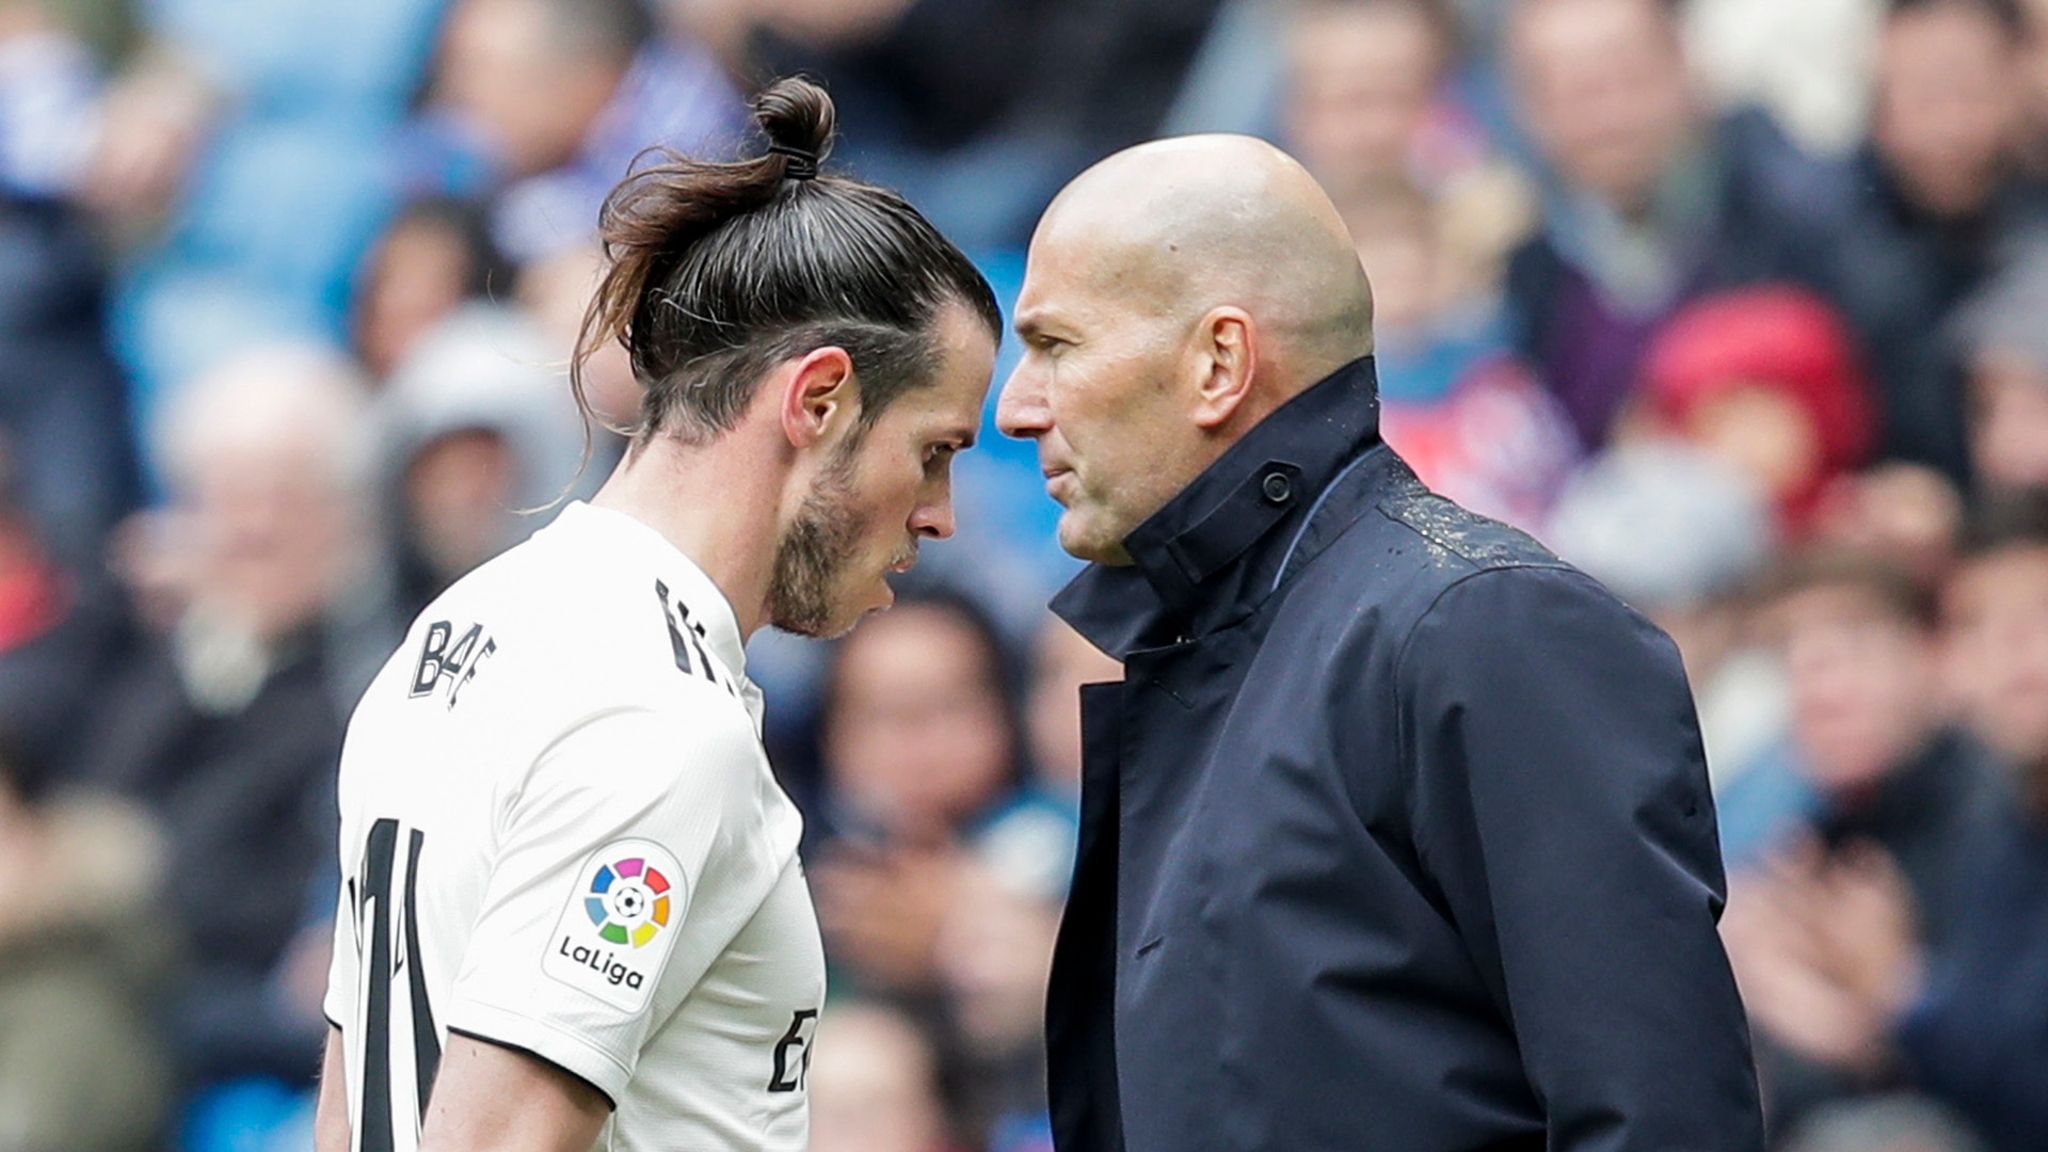 Mauvaise nouvelle pour Zidane, Bale pourrait faire son retour au Real Madrid